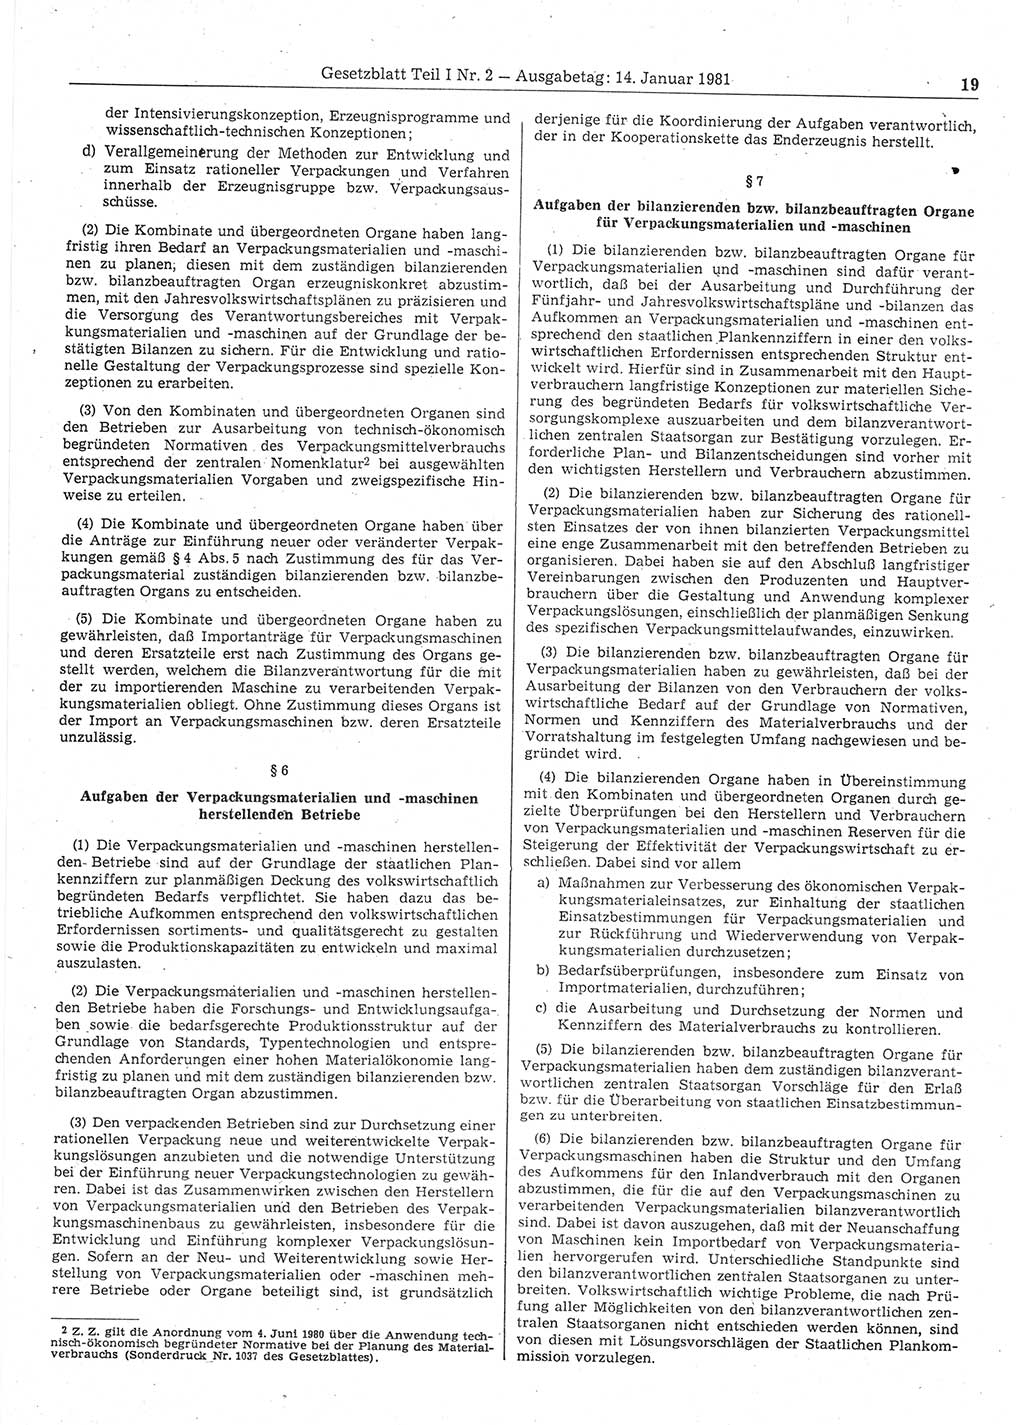 Gesetzblatt (GBl.) der Deutschen Demokratischen Republik (DDR) Teil Ⅰ 1981, Seite 19 (GBl. DDR Ⅰ 1981, S. 19)